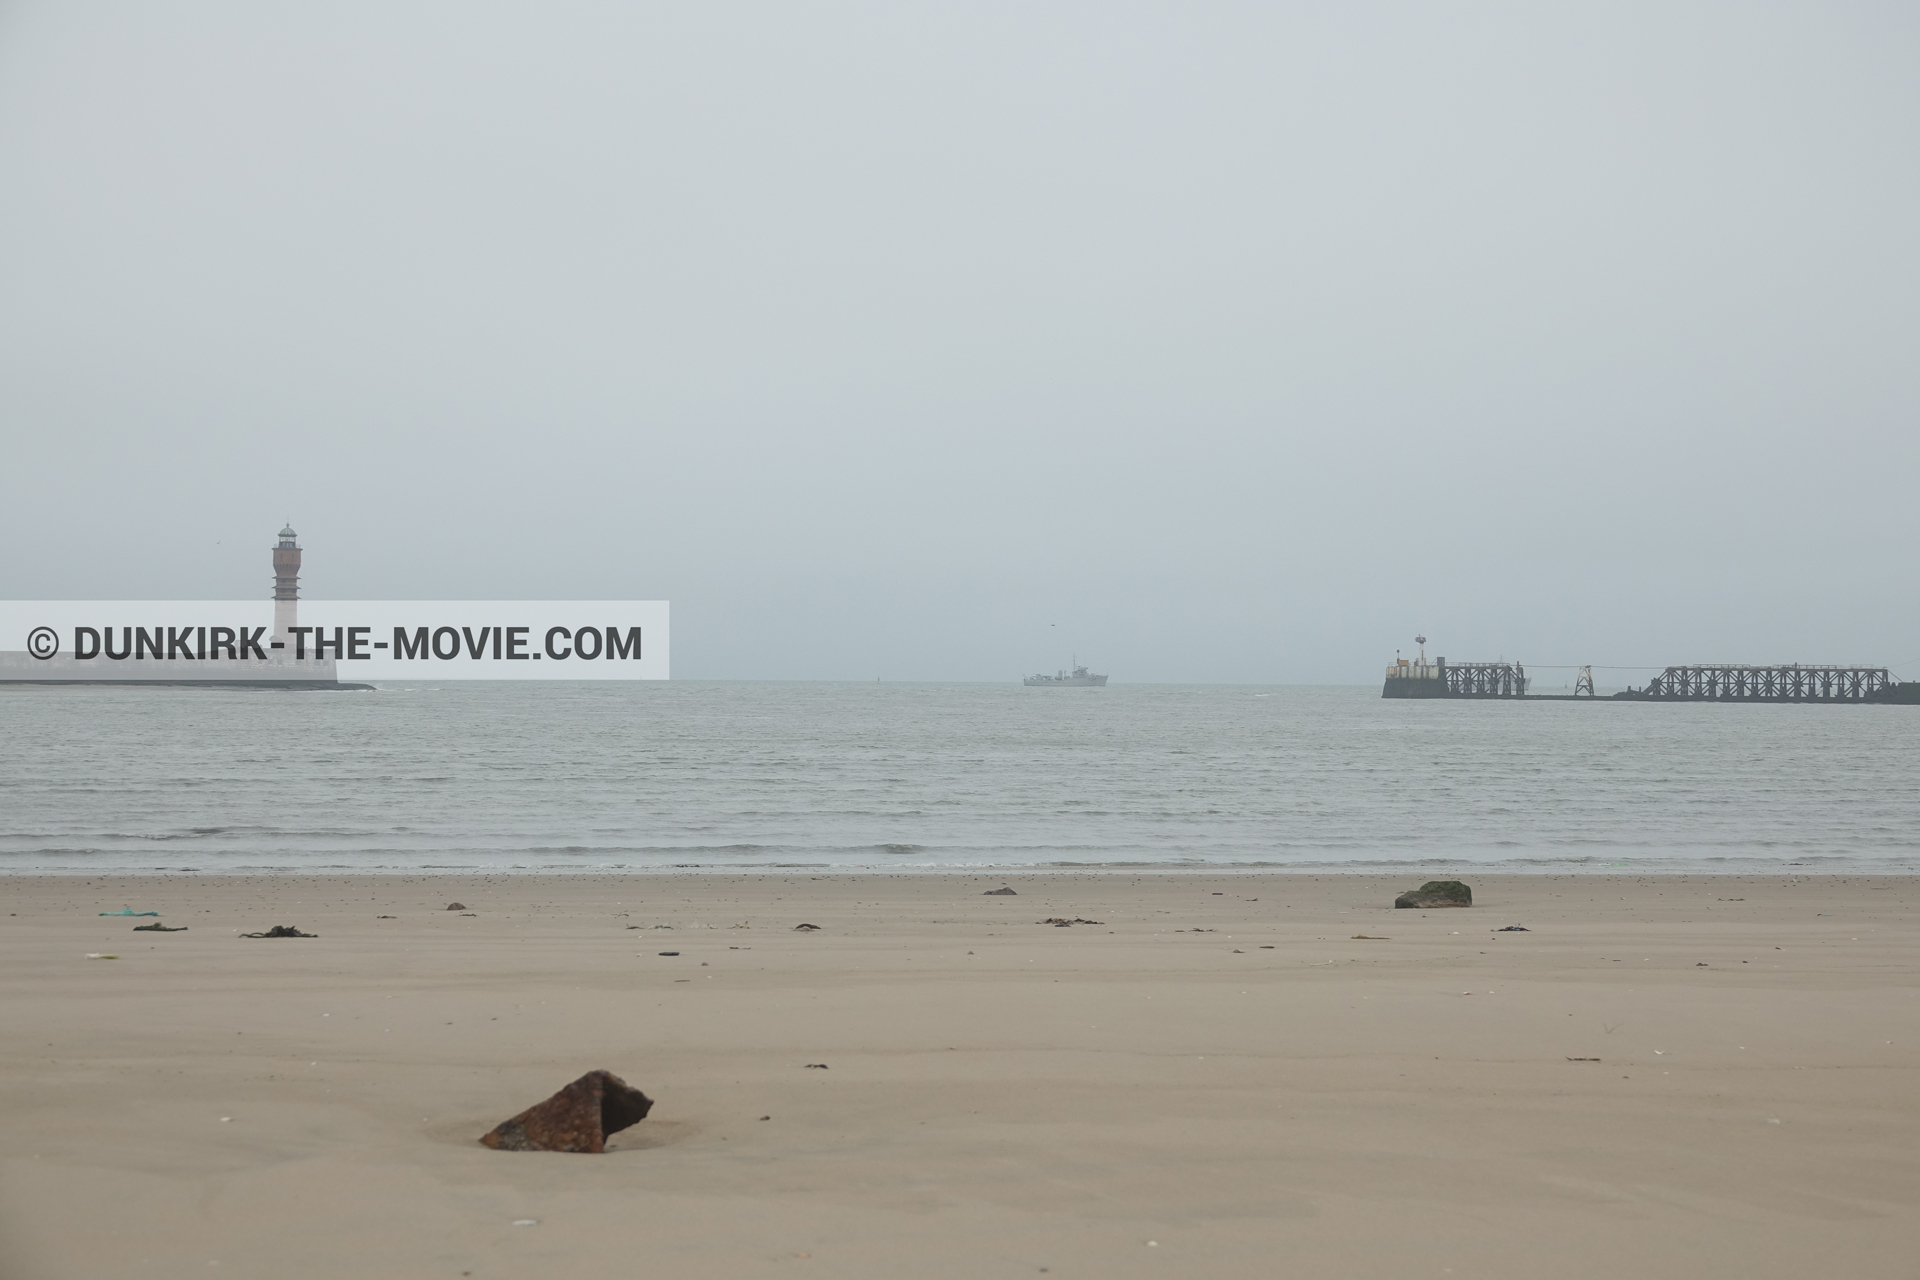 Photo avec bateau, ciel gris, mer calme, phare de St Pol sur Mer, plage,  des dessous du Film Dunkerque de Nolan